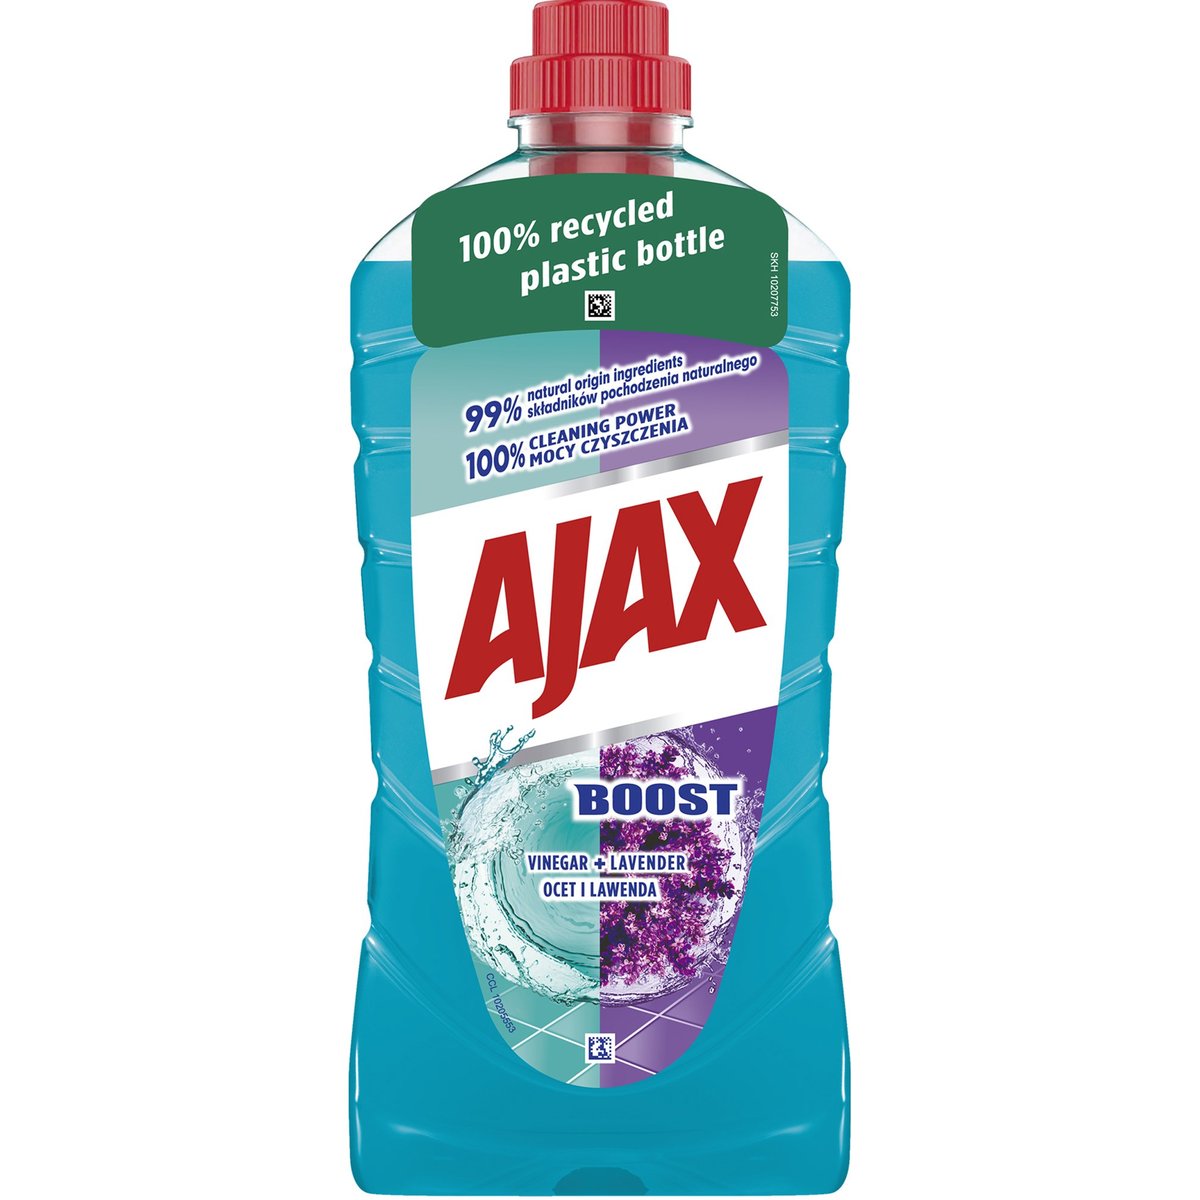 Ajax Boost Vinegar & Levander univerzální čistící prostředek